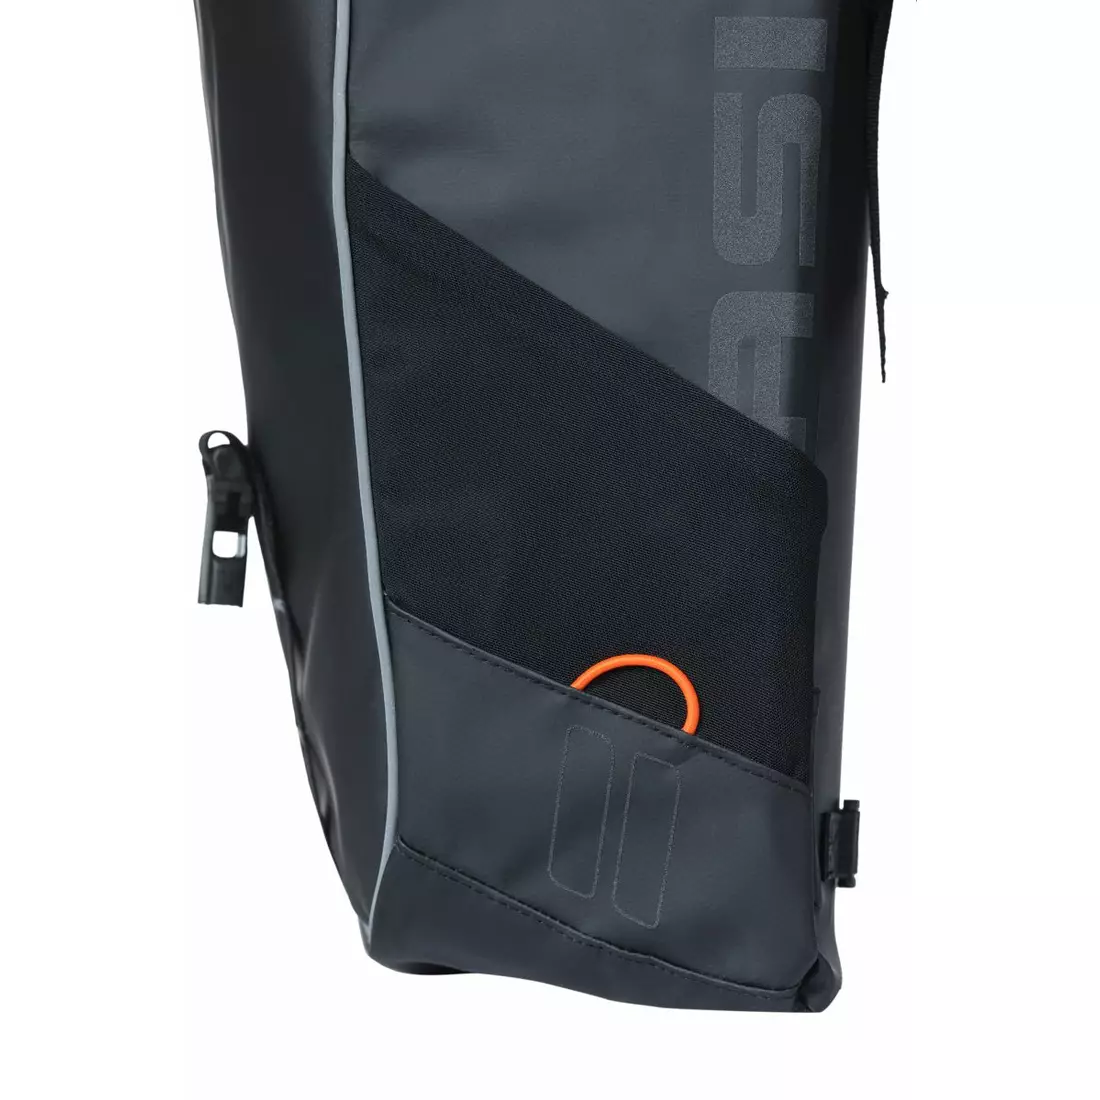 BASIL Fahrradtaschen hinten MILES TARPAULIN DOUBLE BAG 34L black orange 18086